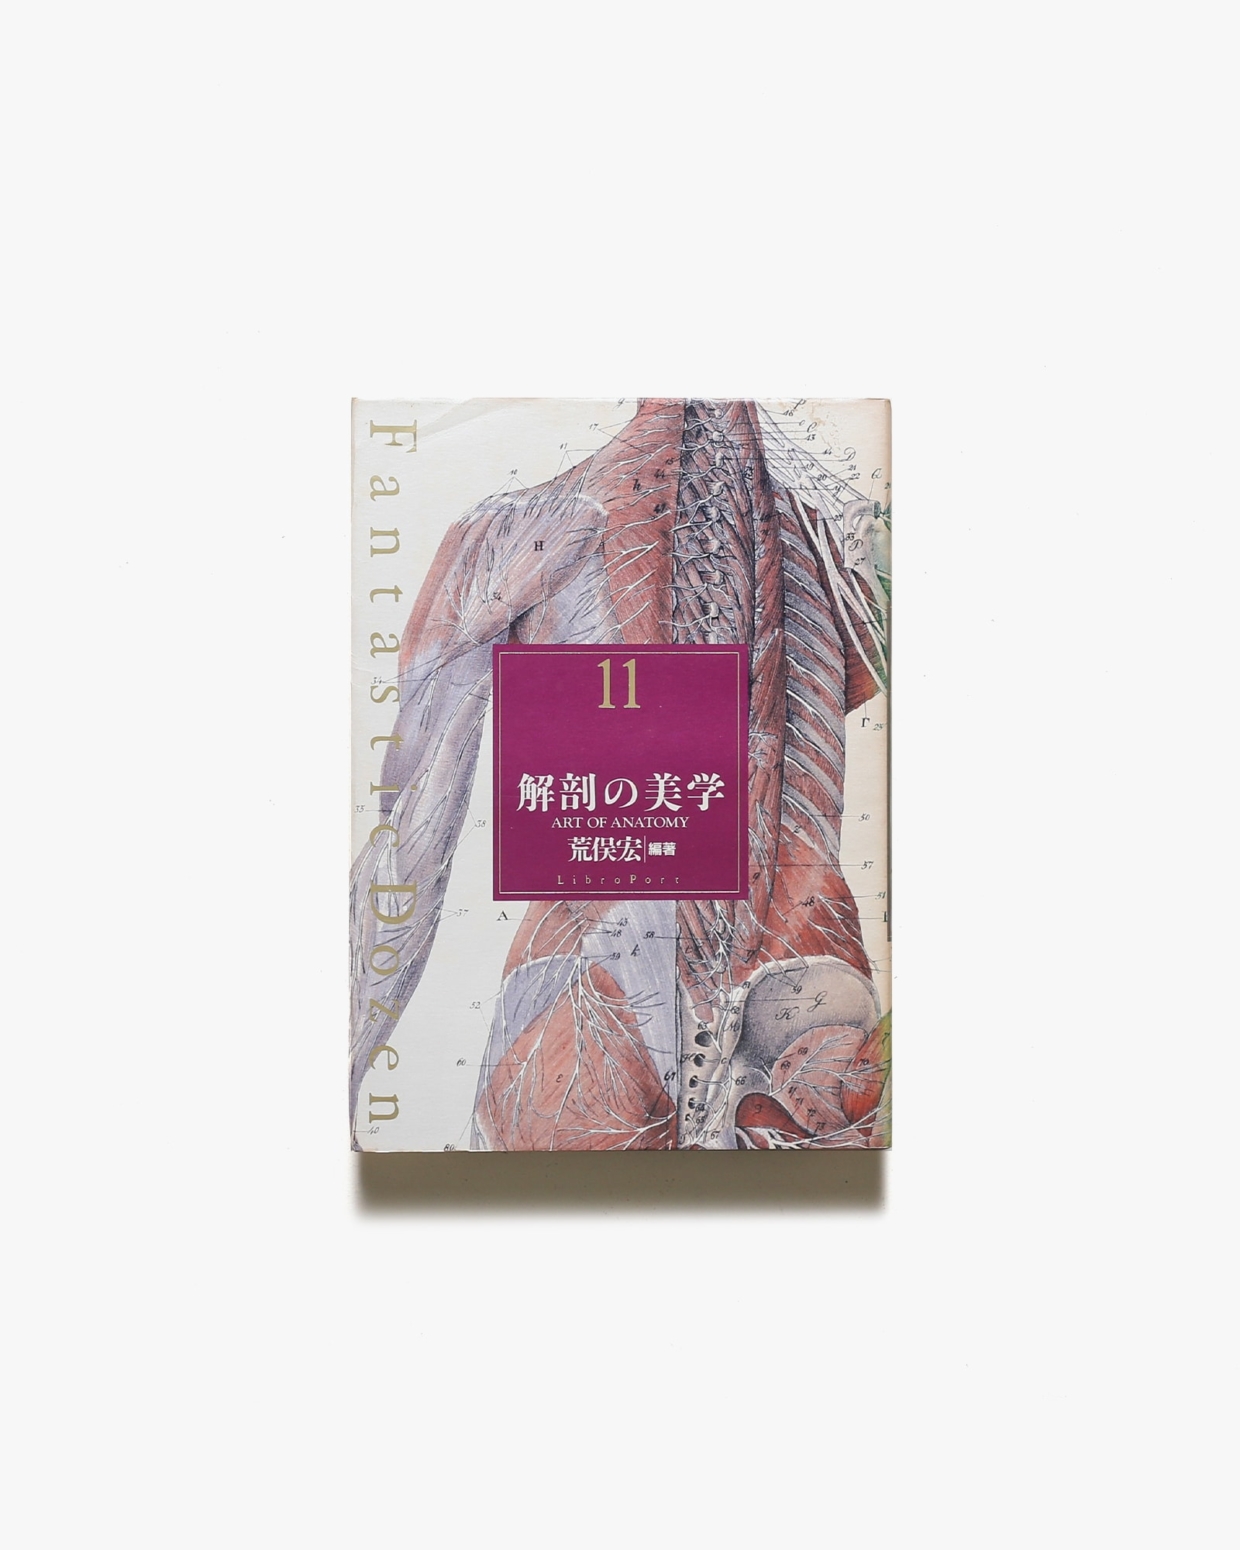 ファンタスティック12 第11巻 解剖の美学 | 荒俣宏